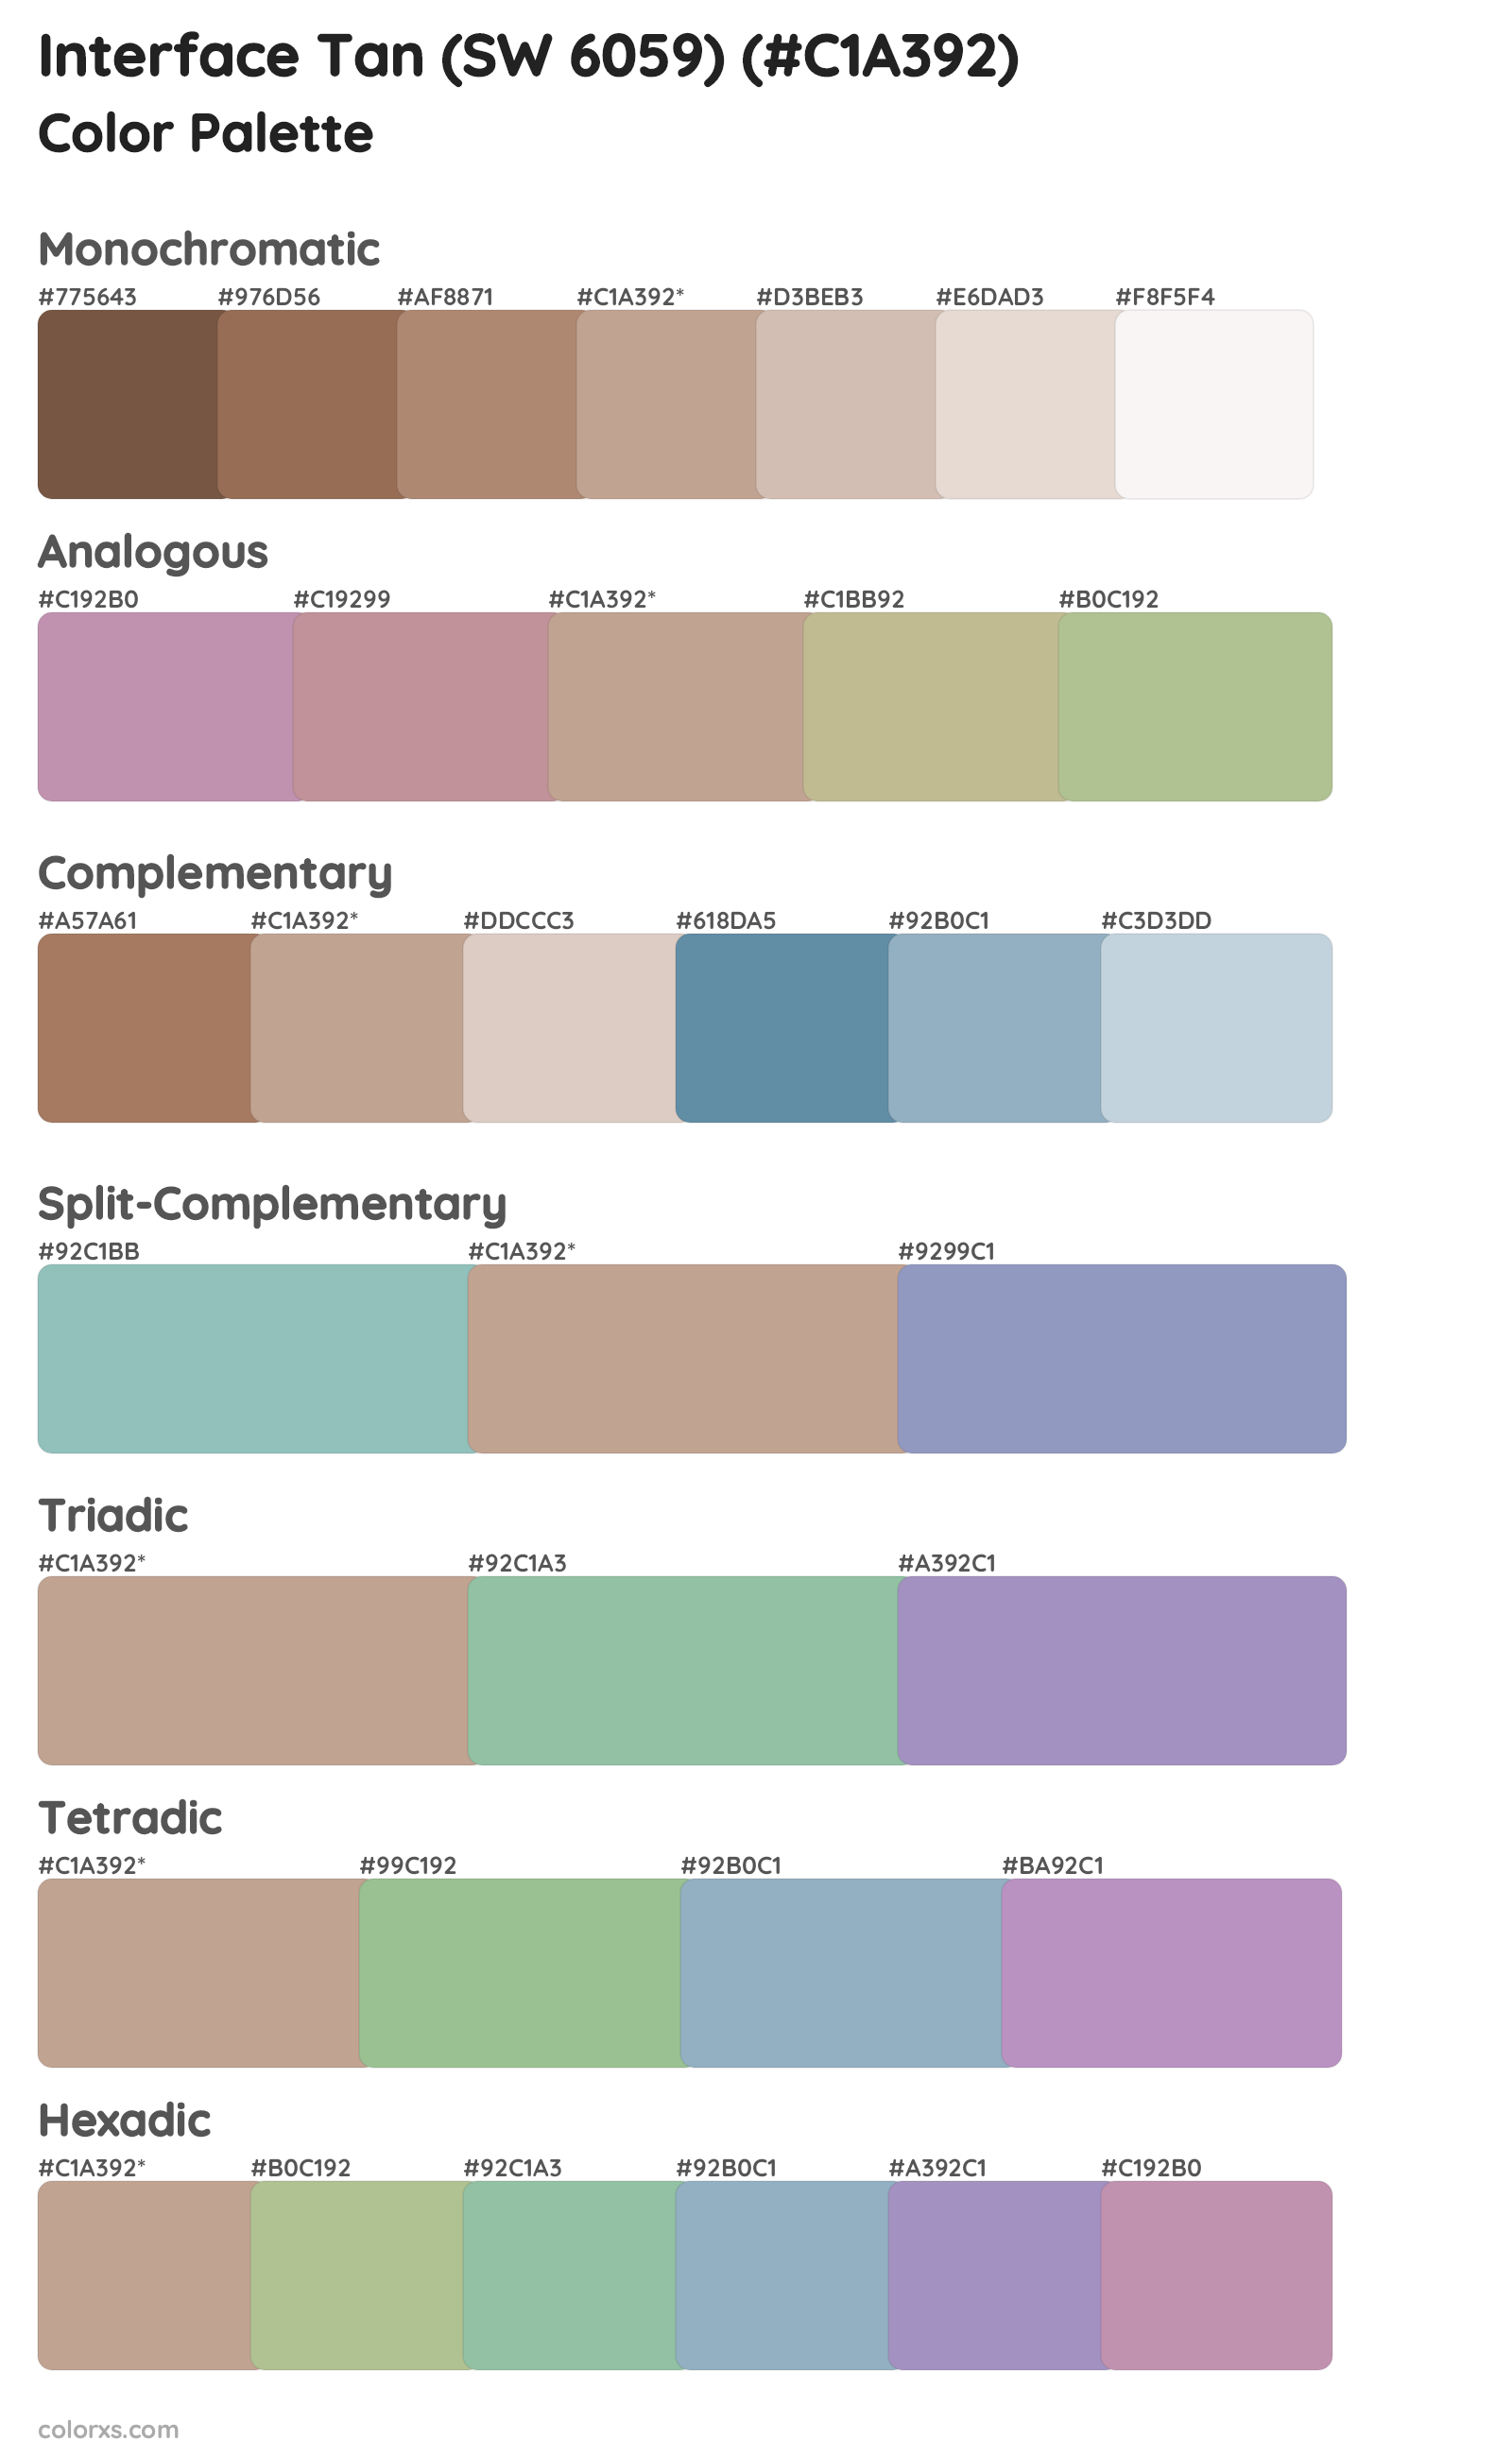 Interface Tan (SW 6059) Color Scheme Palettes